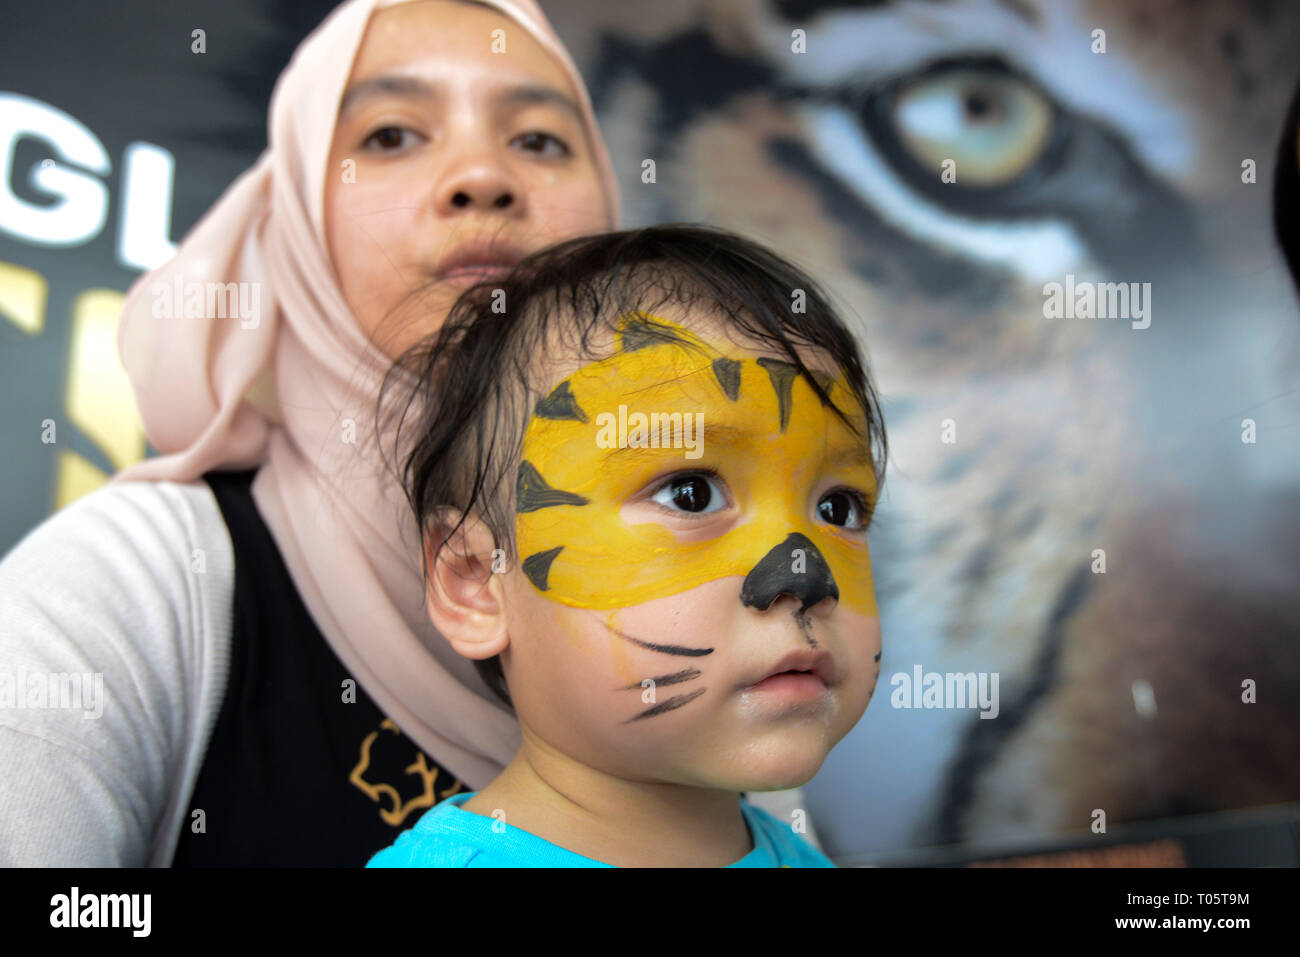 (190317) -- KUALA LUMPUR, 17 de marzo de 2019 (Xinhua) -- un niño con una pintura facial de Tiger es visto durante la campaña de salvar nuestro Tigre de Malaya, como parte de los eventos para conmemorar el Día Internacional de la World Wildlife, en Kuala Lumpur, Malasia, 17 de marzo de 2019. El Gobierno de Malasia anunció el lanzamiento de una campaña en domingo para proporcionar una mayor protección para el tigre del país en medio de un alarmante aumento de la caza furtiva. El tigre de Malaya, una subespecie del gran gato vive en el sur de Tailandia y Malasia, han visto sus números disminuyen a un número estimado de 250 en el medio silvestre en Malasia debido a la caza furtiva y la pérdida Foto de stock